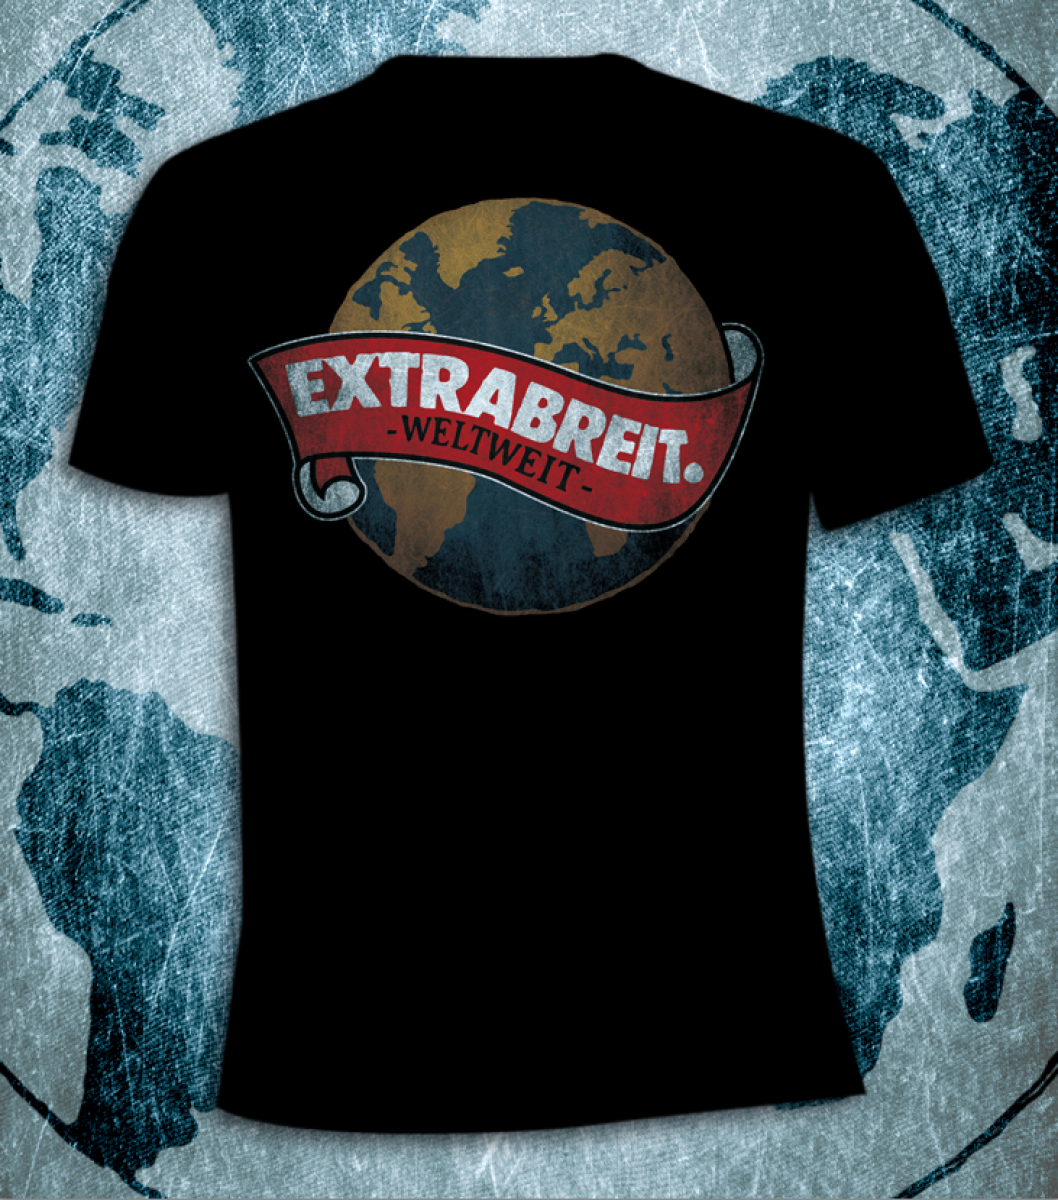 Extrabreit T-Shirt “Weltweit”